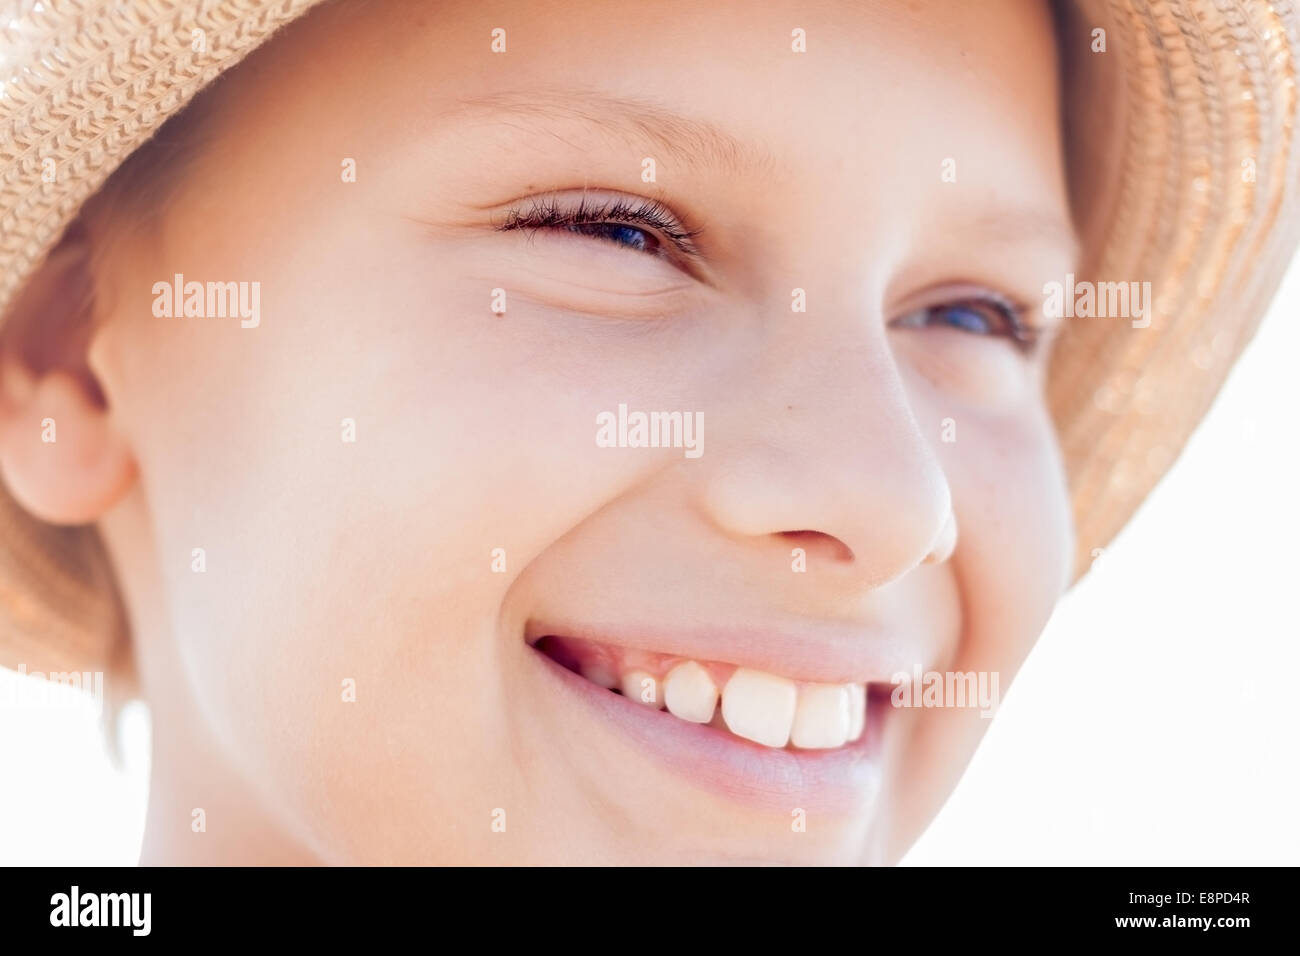 Enfant mignon visage sourire heureux chapeau de paille Banque D'Images